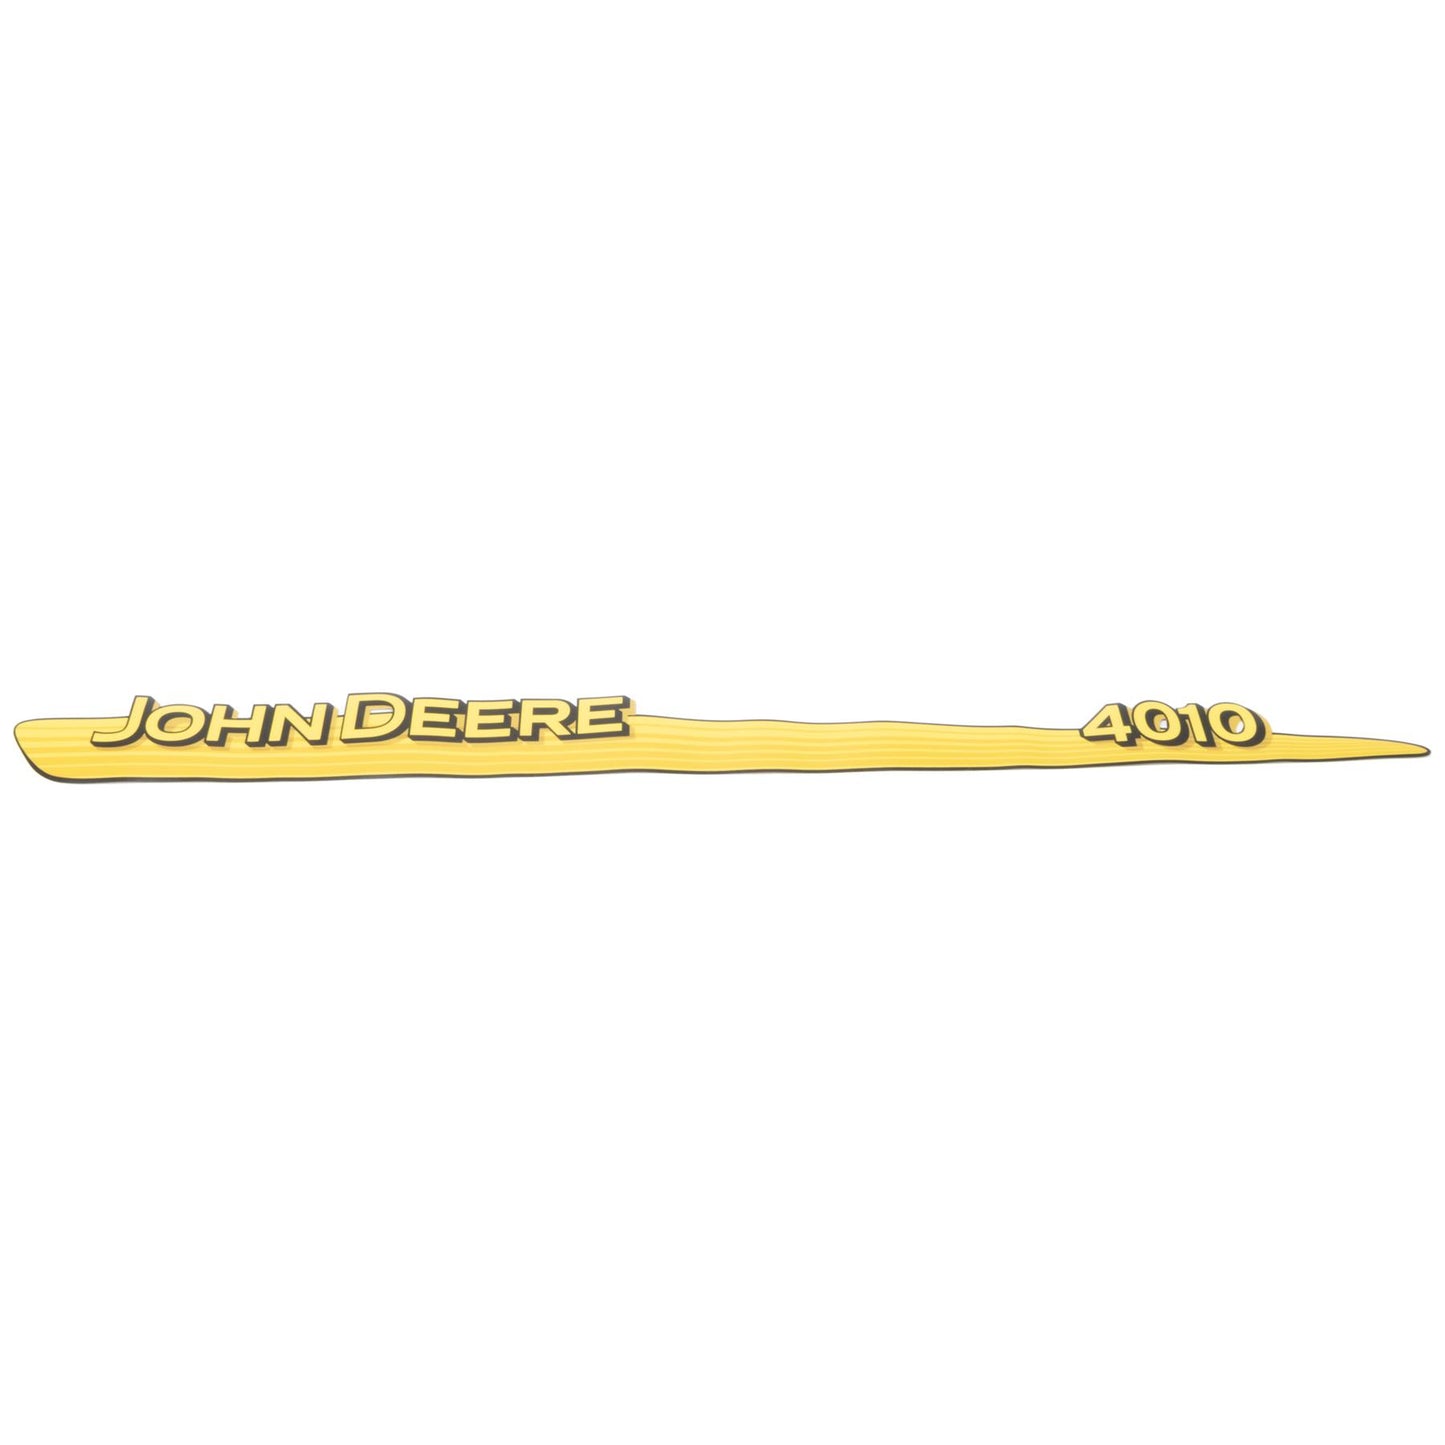 John Deere Decal - 4010 - Both Sides - LVU12295 LVU12296